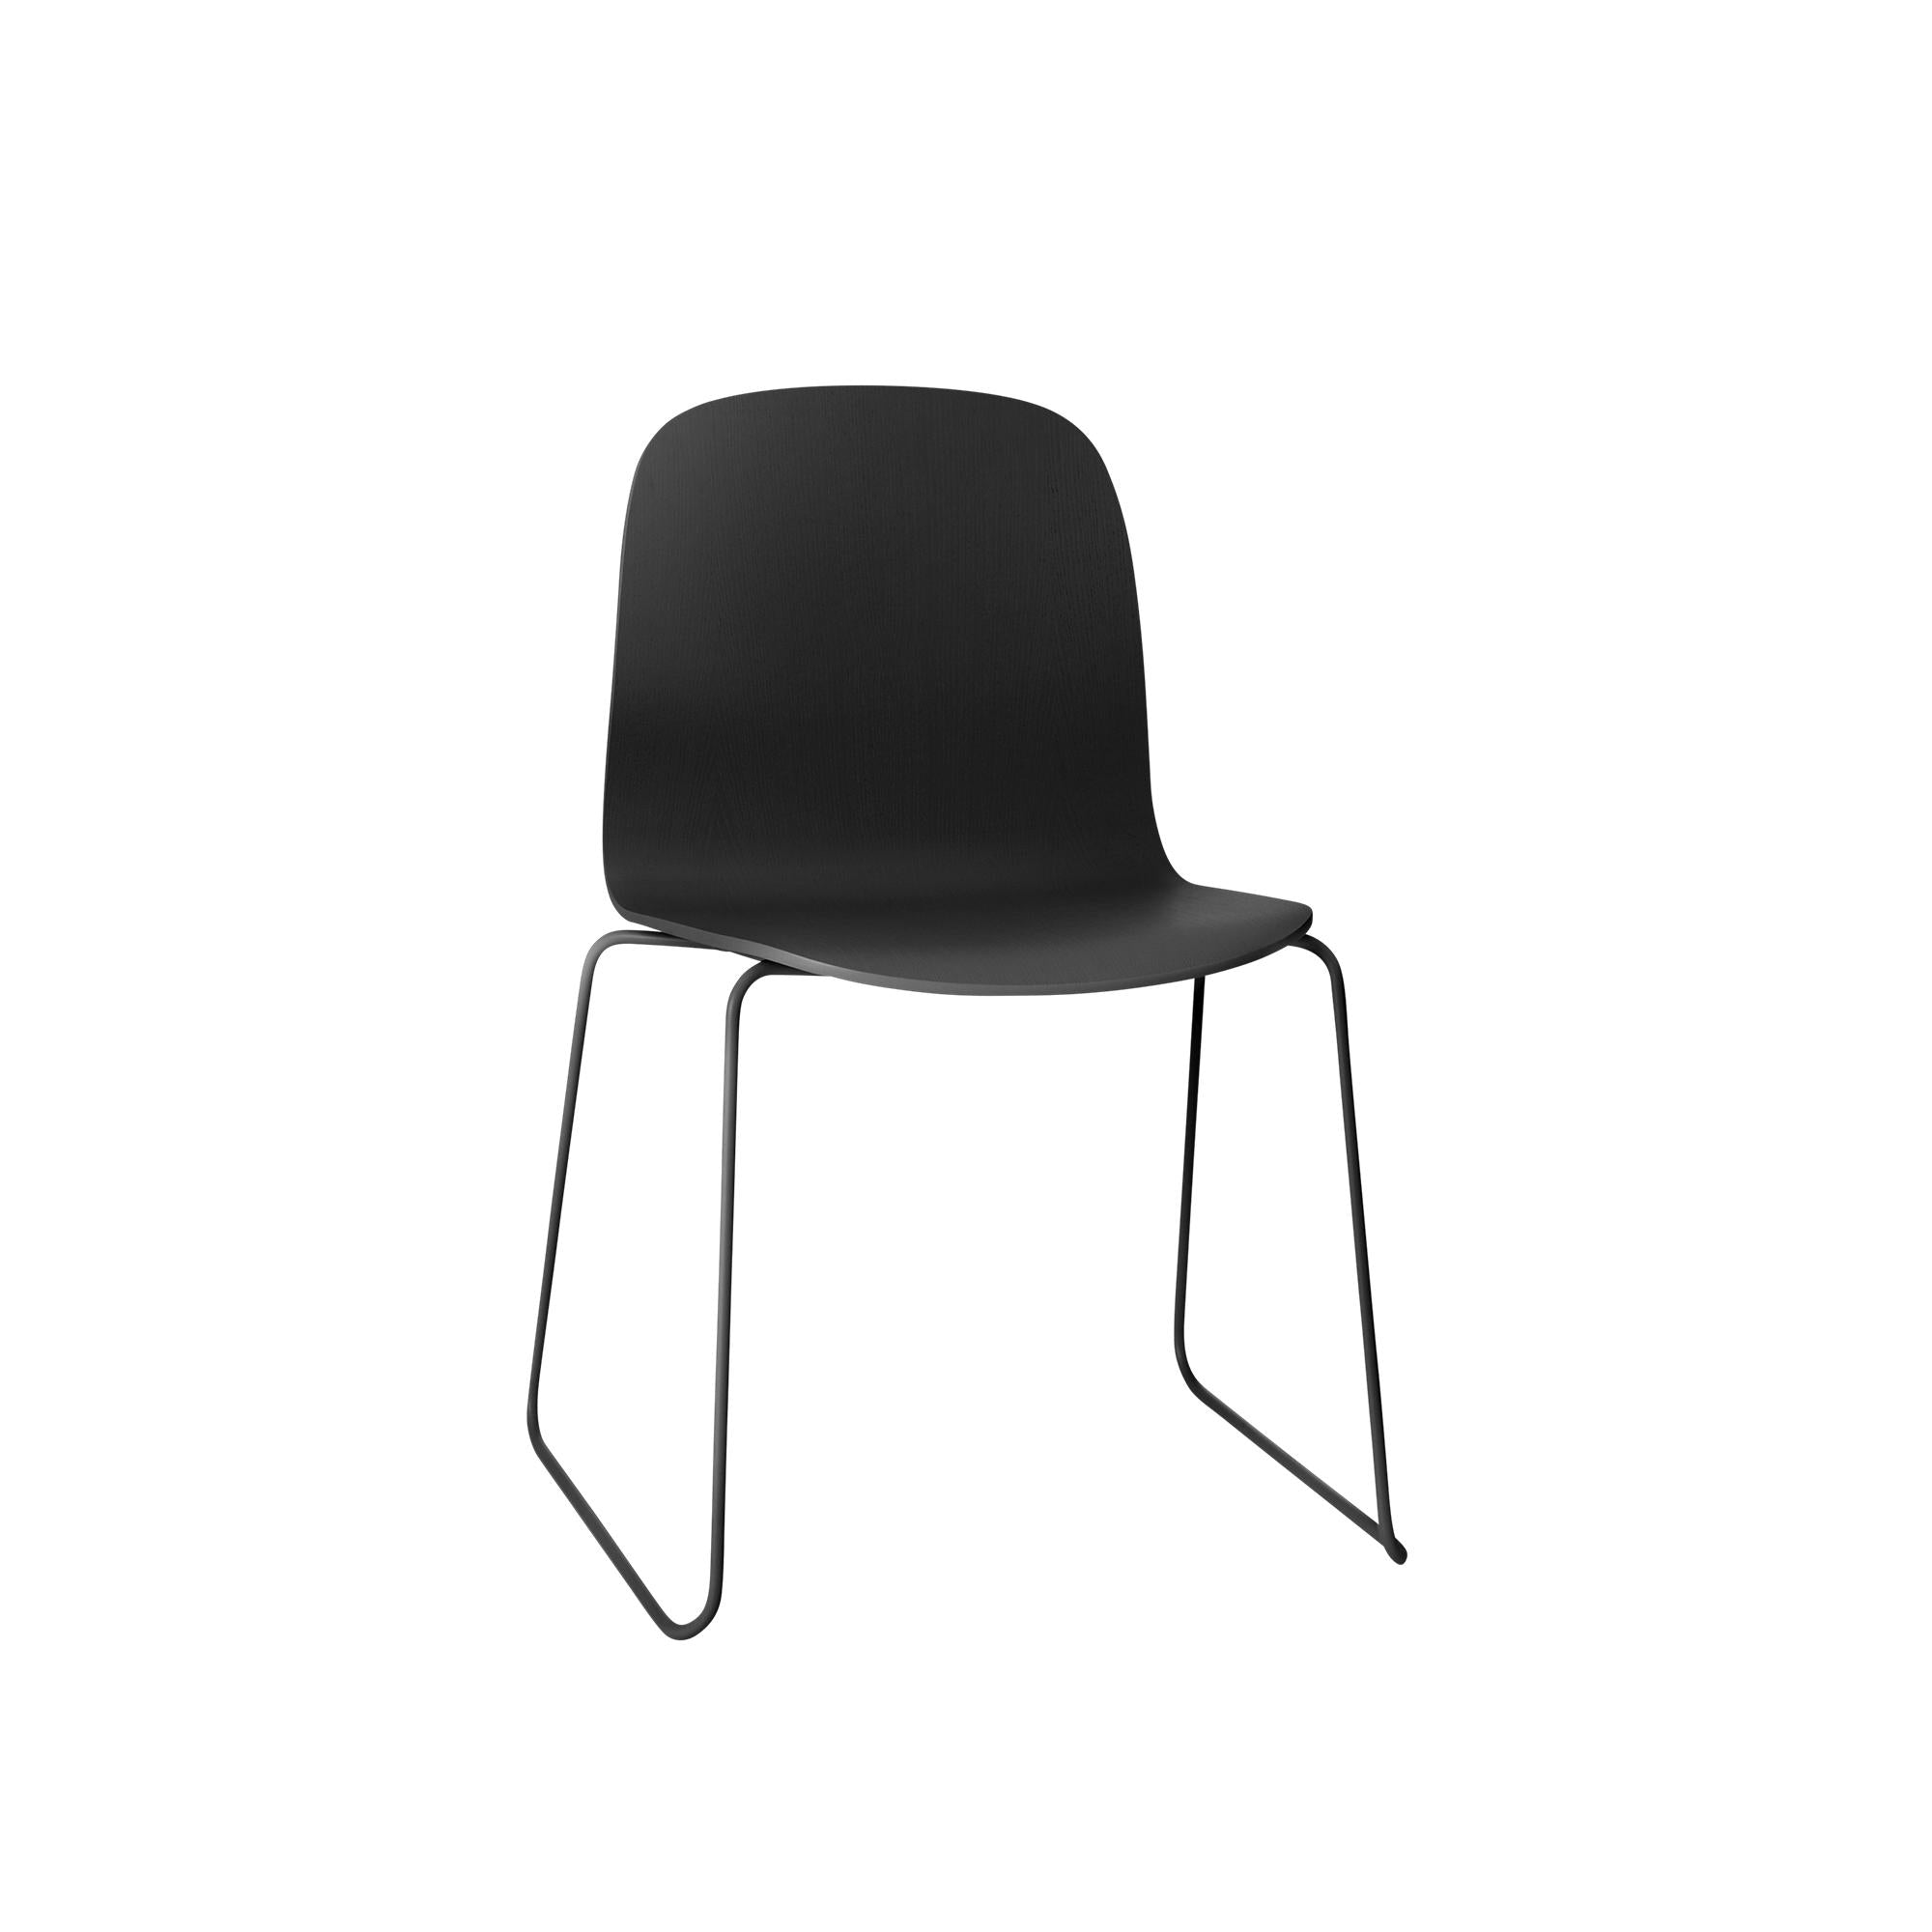 Základna sáňky na židle Muuto Visu, dřevěné sedadlo, černá